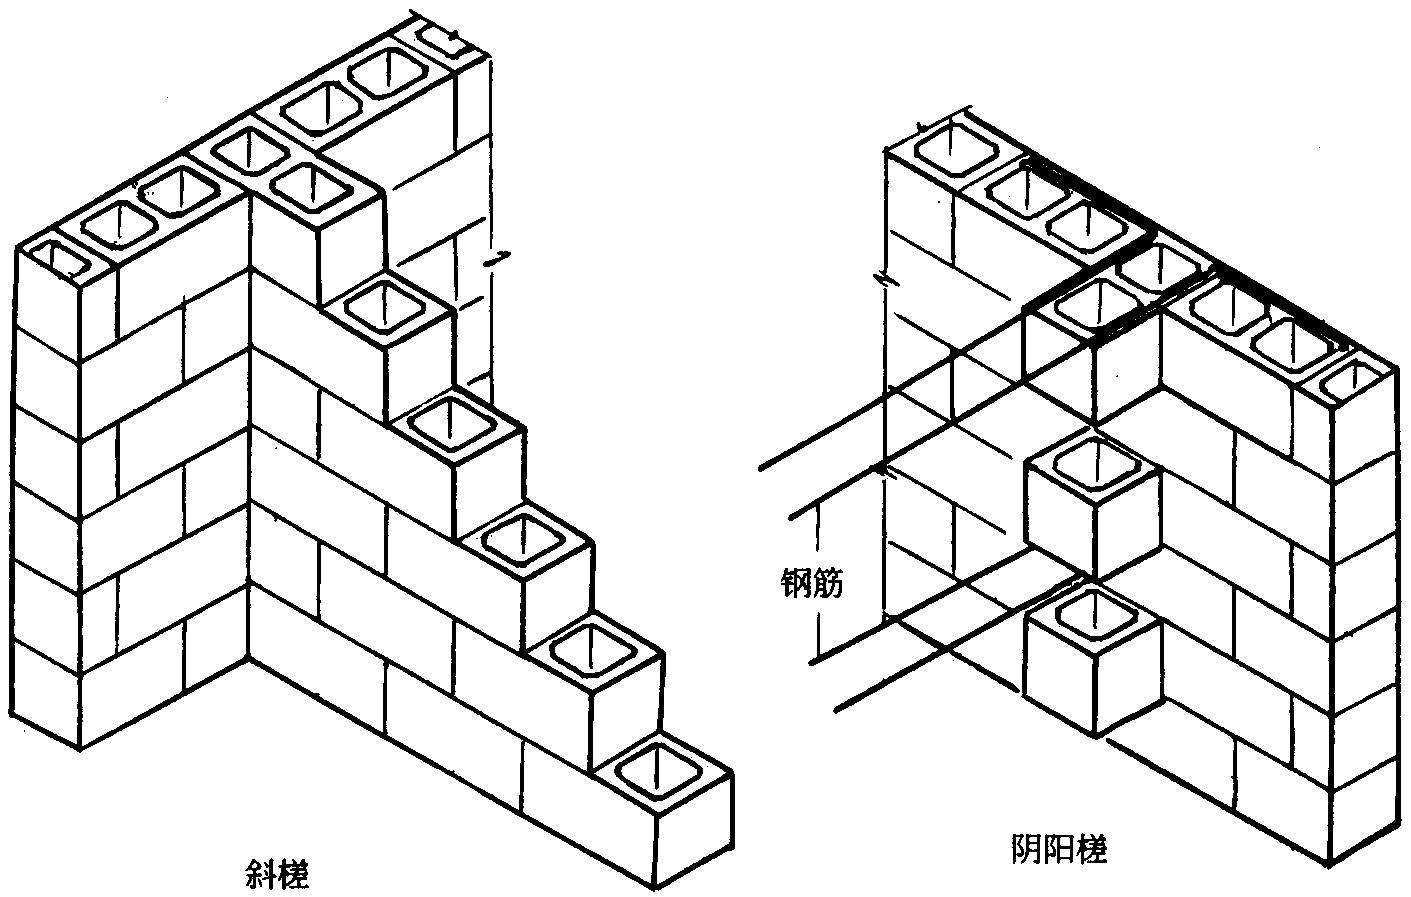 2,平砖顺砌法:把砖头横放在地面,按照工字的造型砌墙